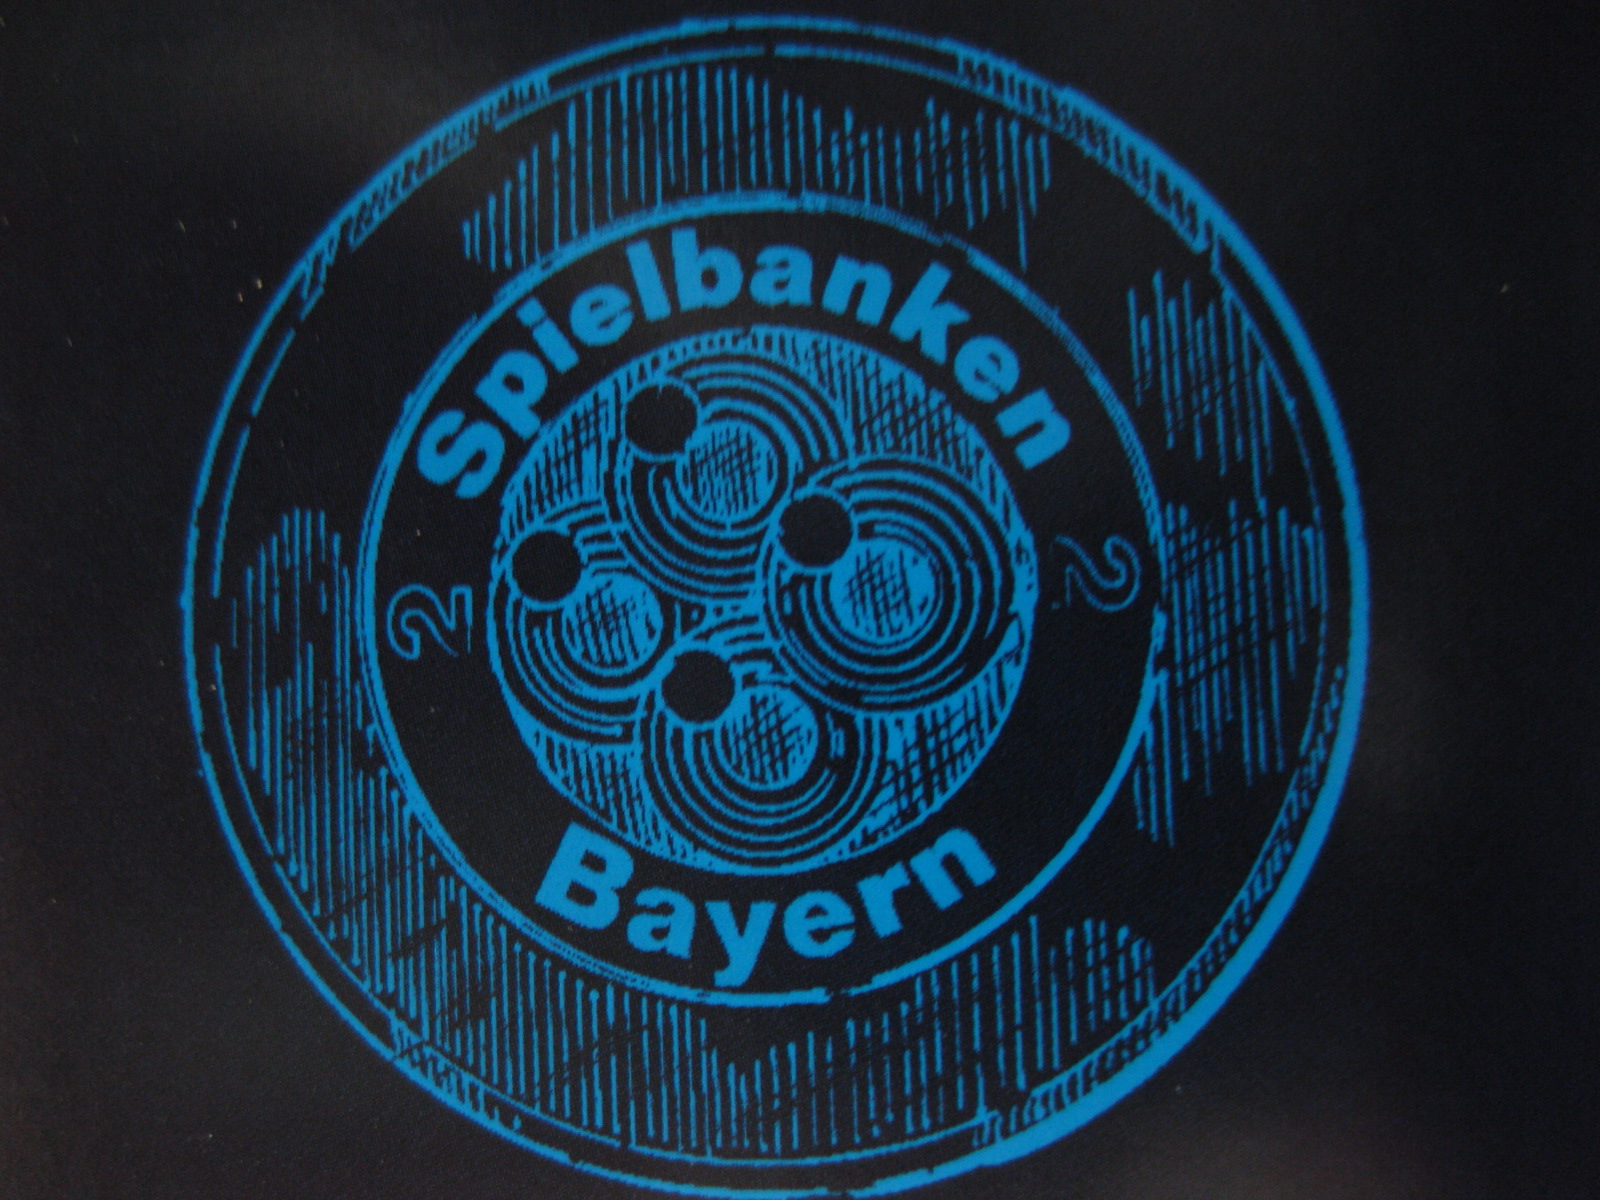 Bayerische Spielbank in Garmisch - Partenkirchen